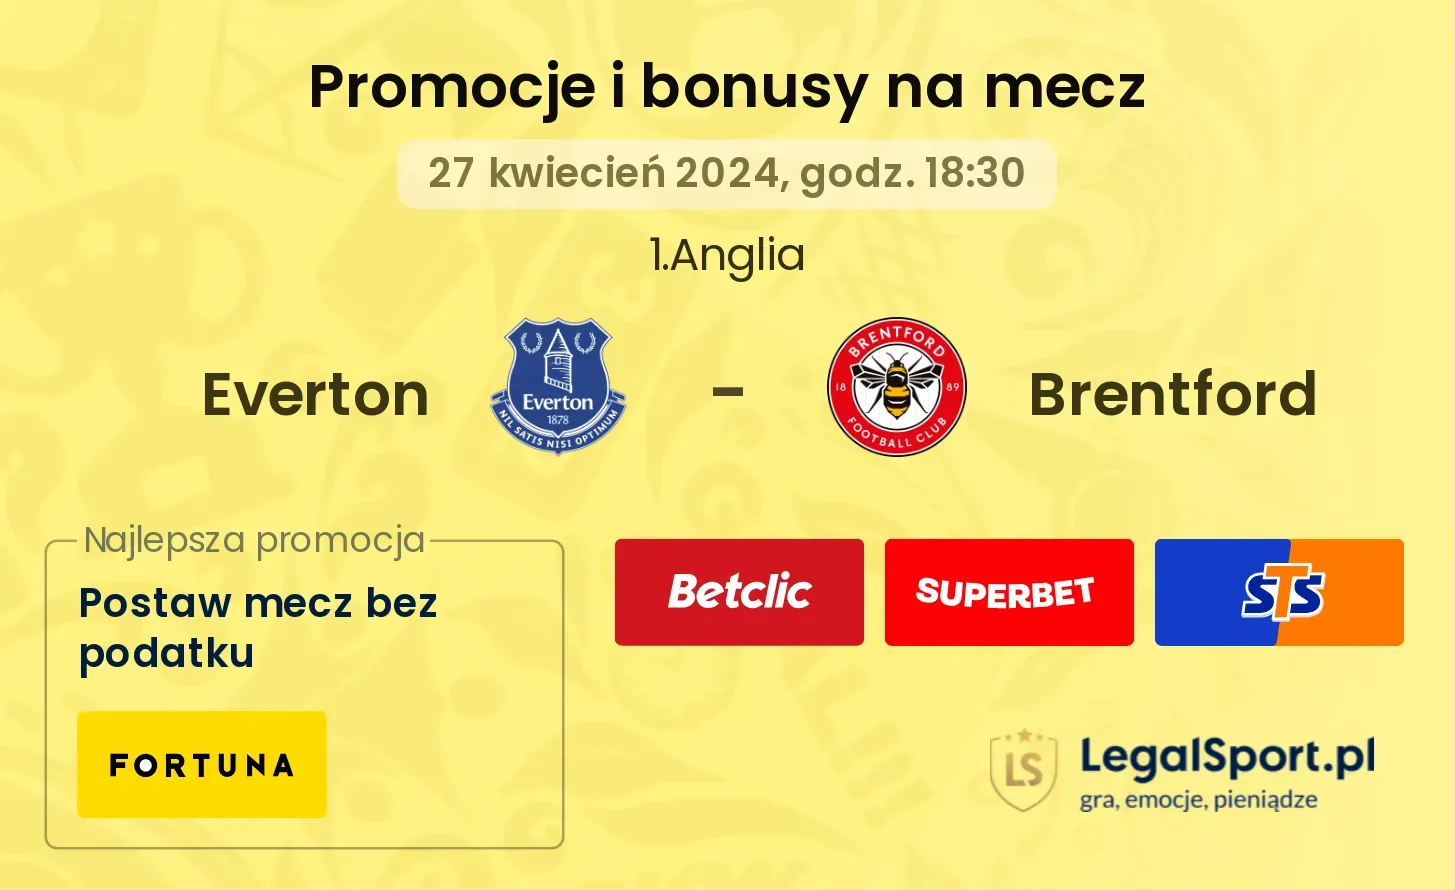 Everton - Brentford promocje bonusy na mecz